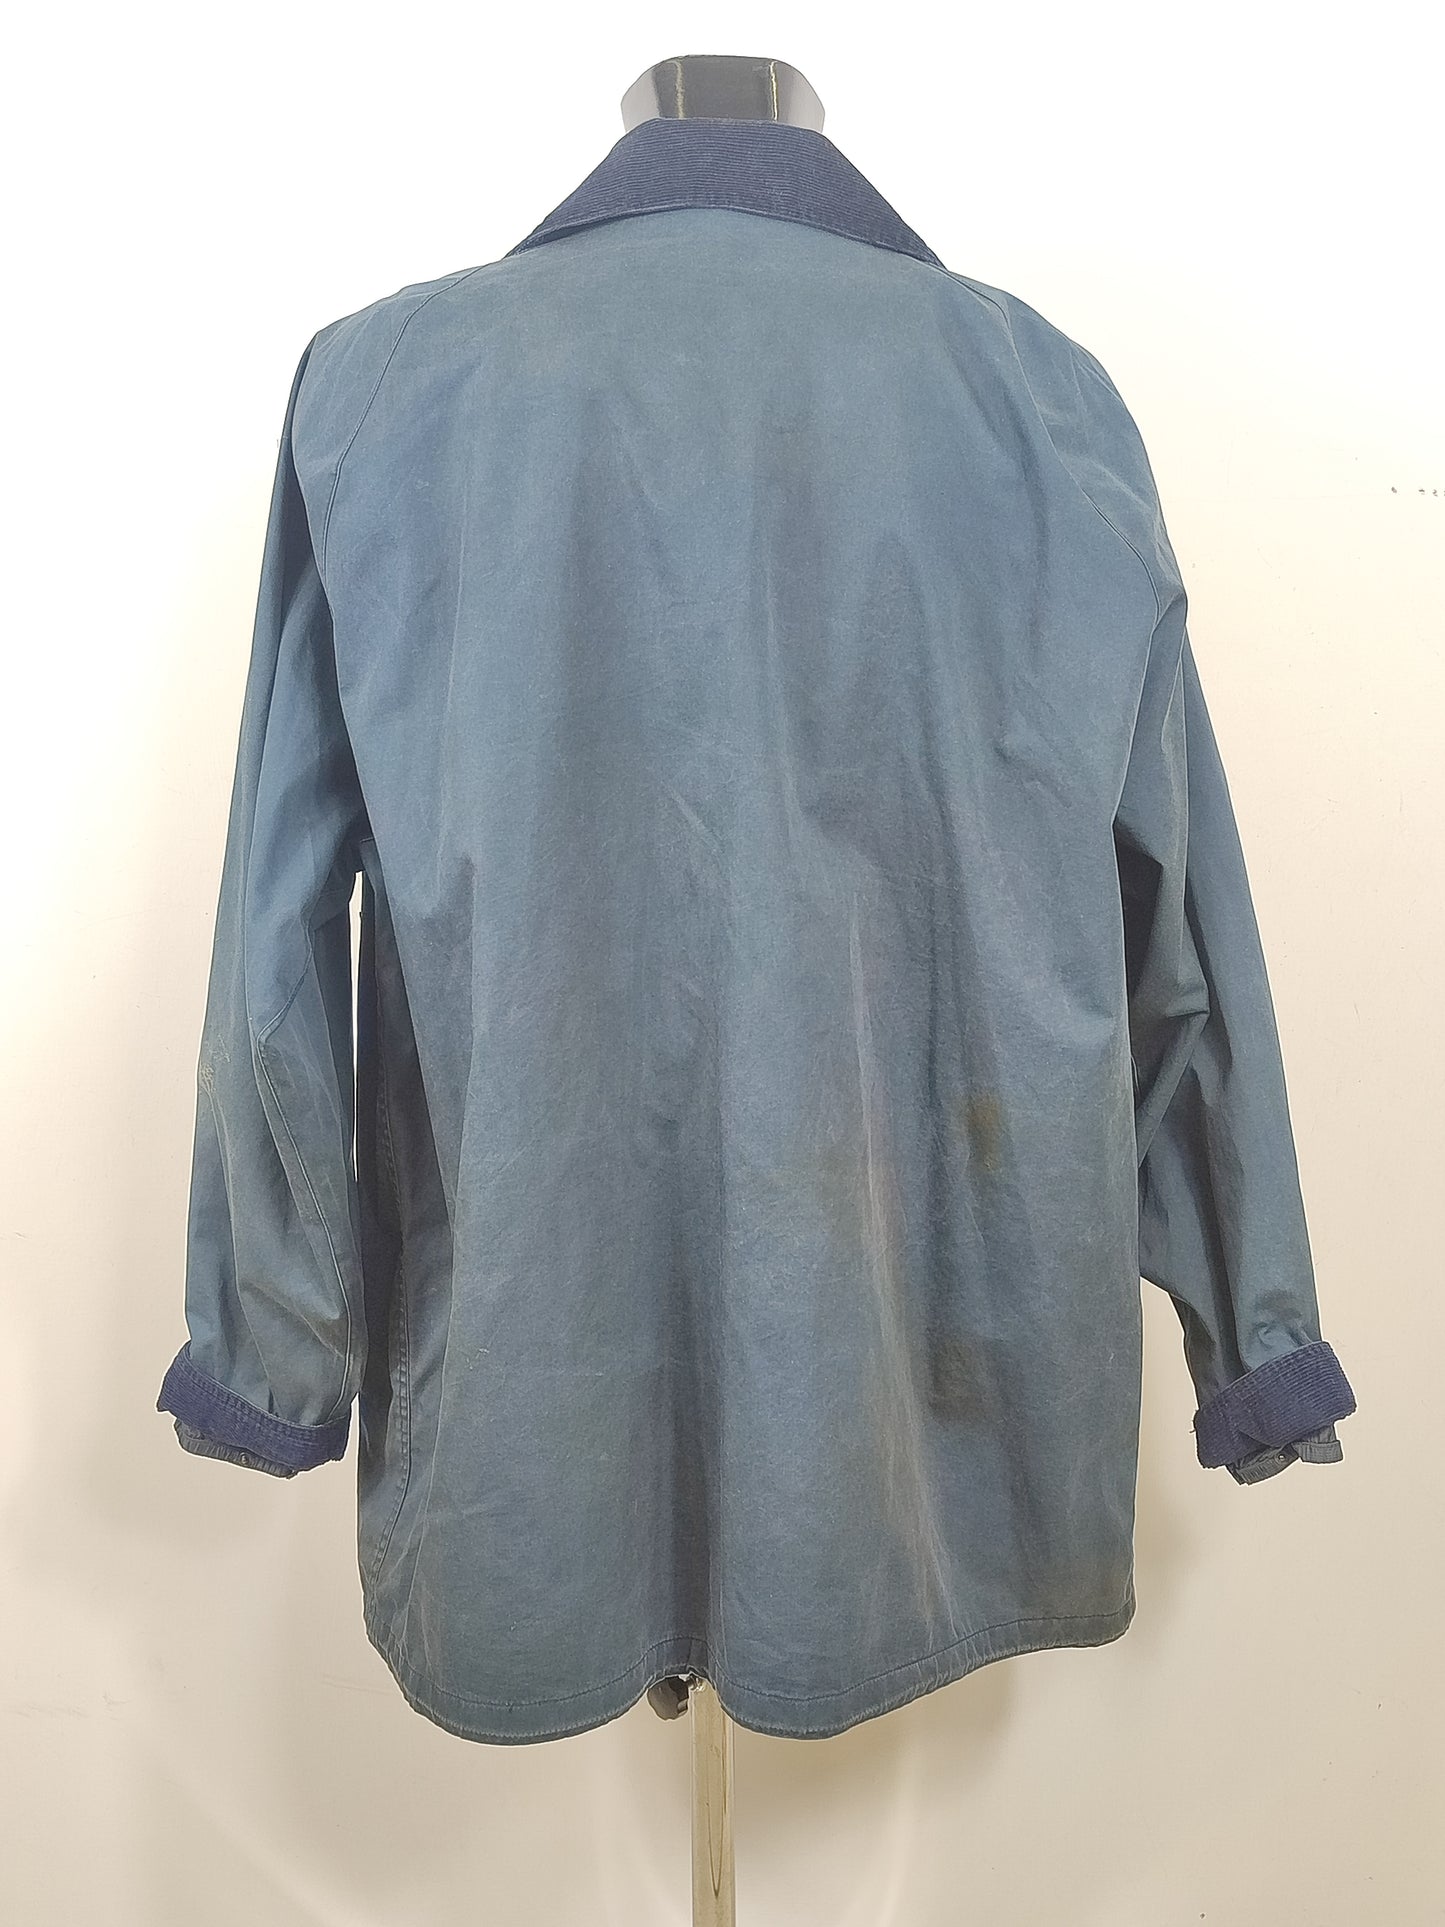 Giacca Barbour Lightweight Beaufort Blu XL  Man Navy Lightweight cotton jacket size XL